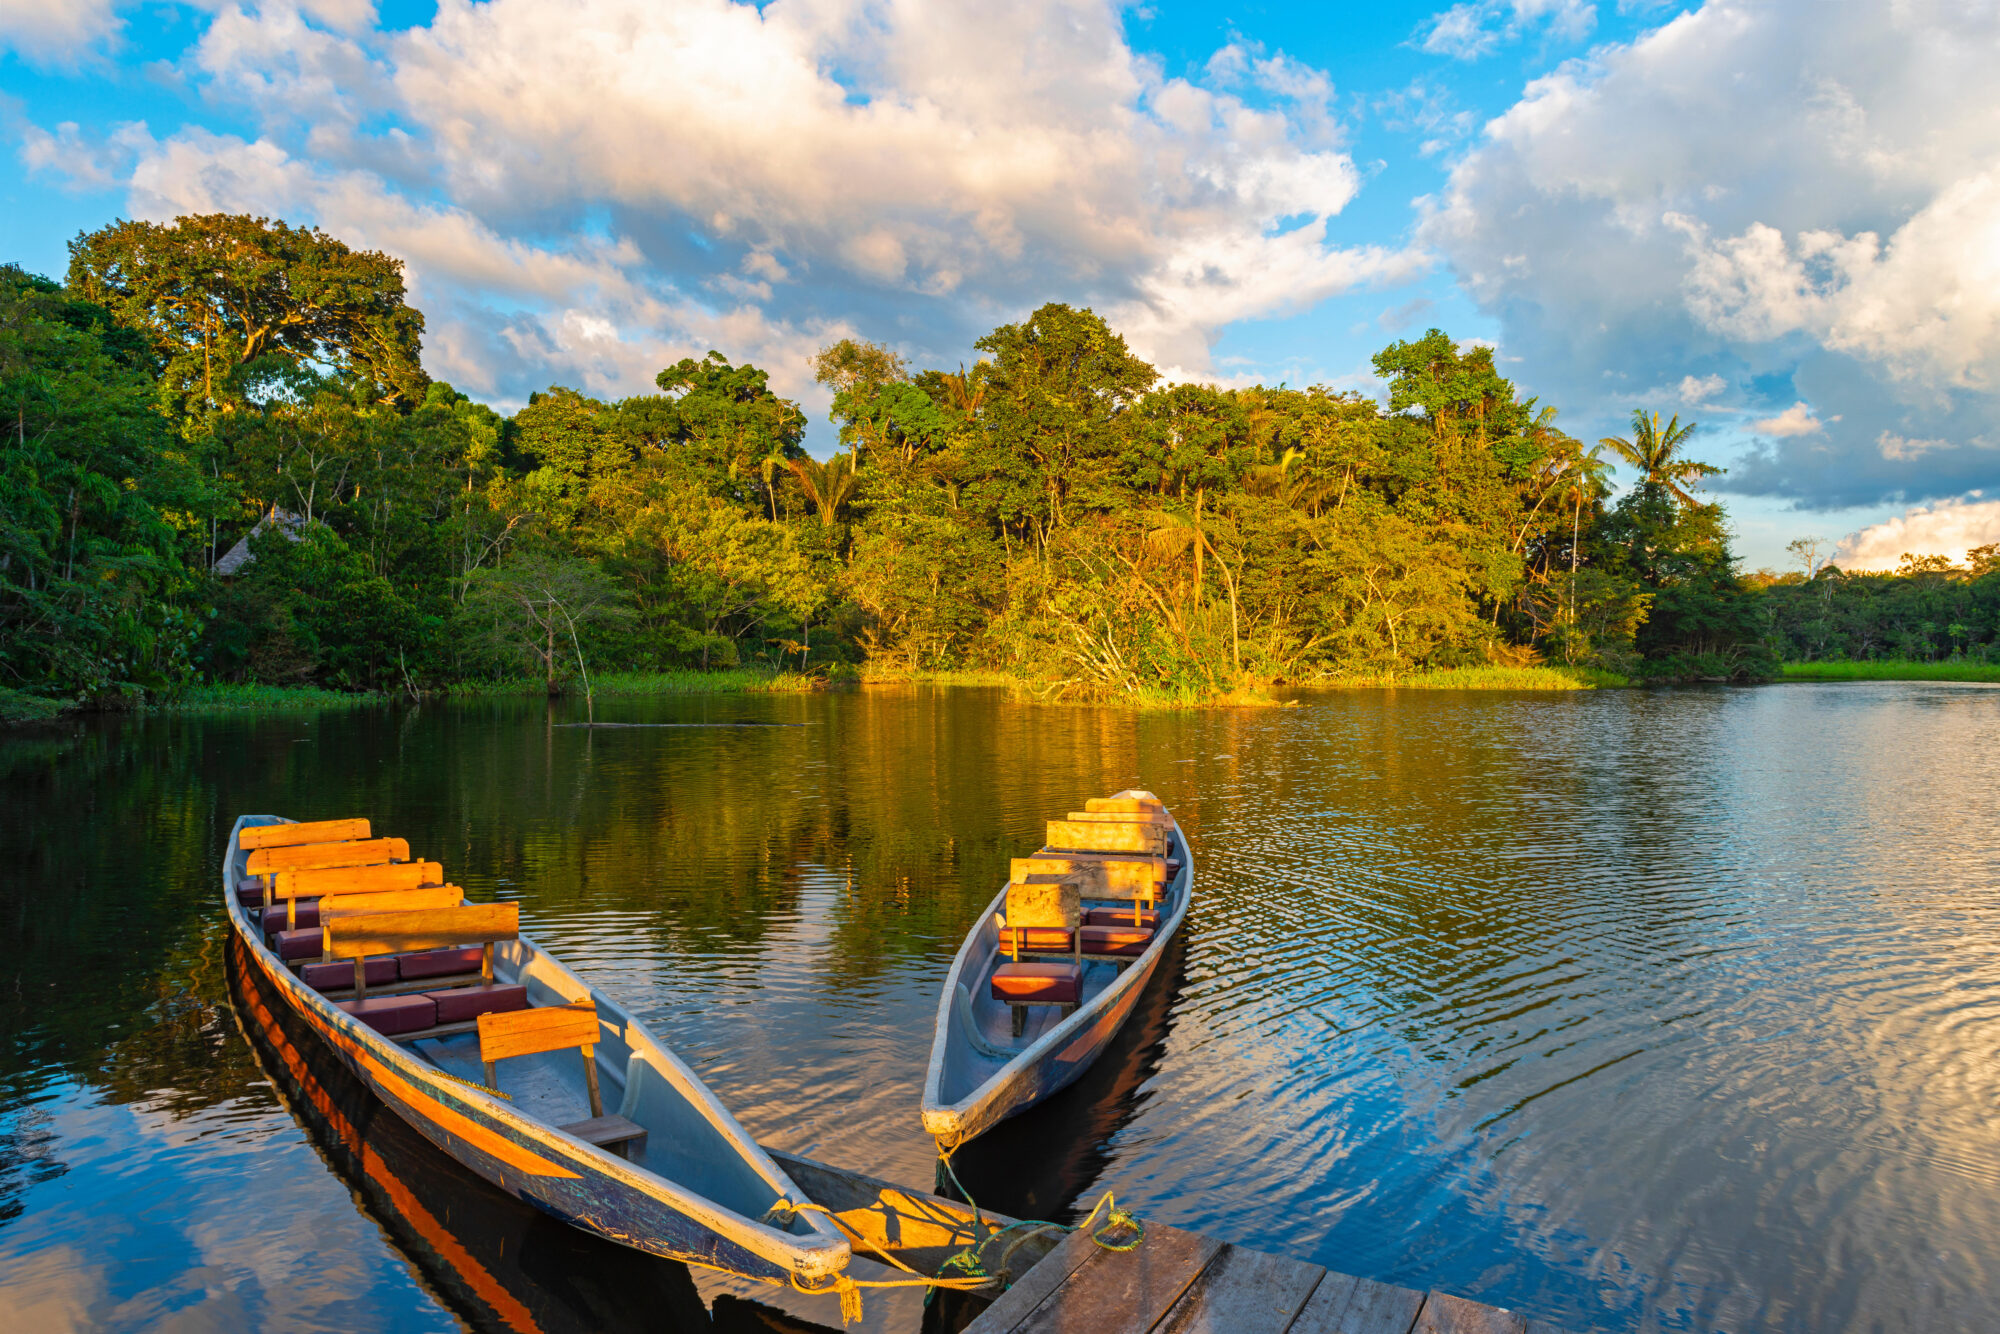 <p>Duas canoas de madeira tradicionais na bacia do rio Amazonas no Parque Nacional Yasuni no Equador (imagem: Alamy)</p> <div id="gtx-trans" style="position: absolute; left: -524px; top: 33px;"> <div class="gtx-trans-icon"></div> </div>